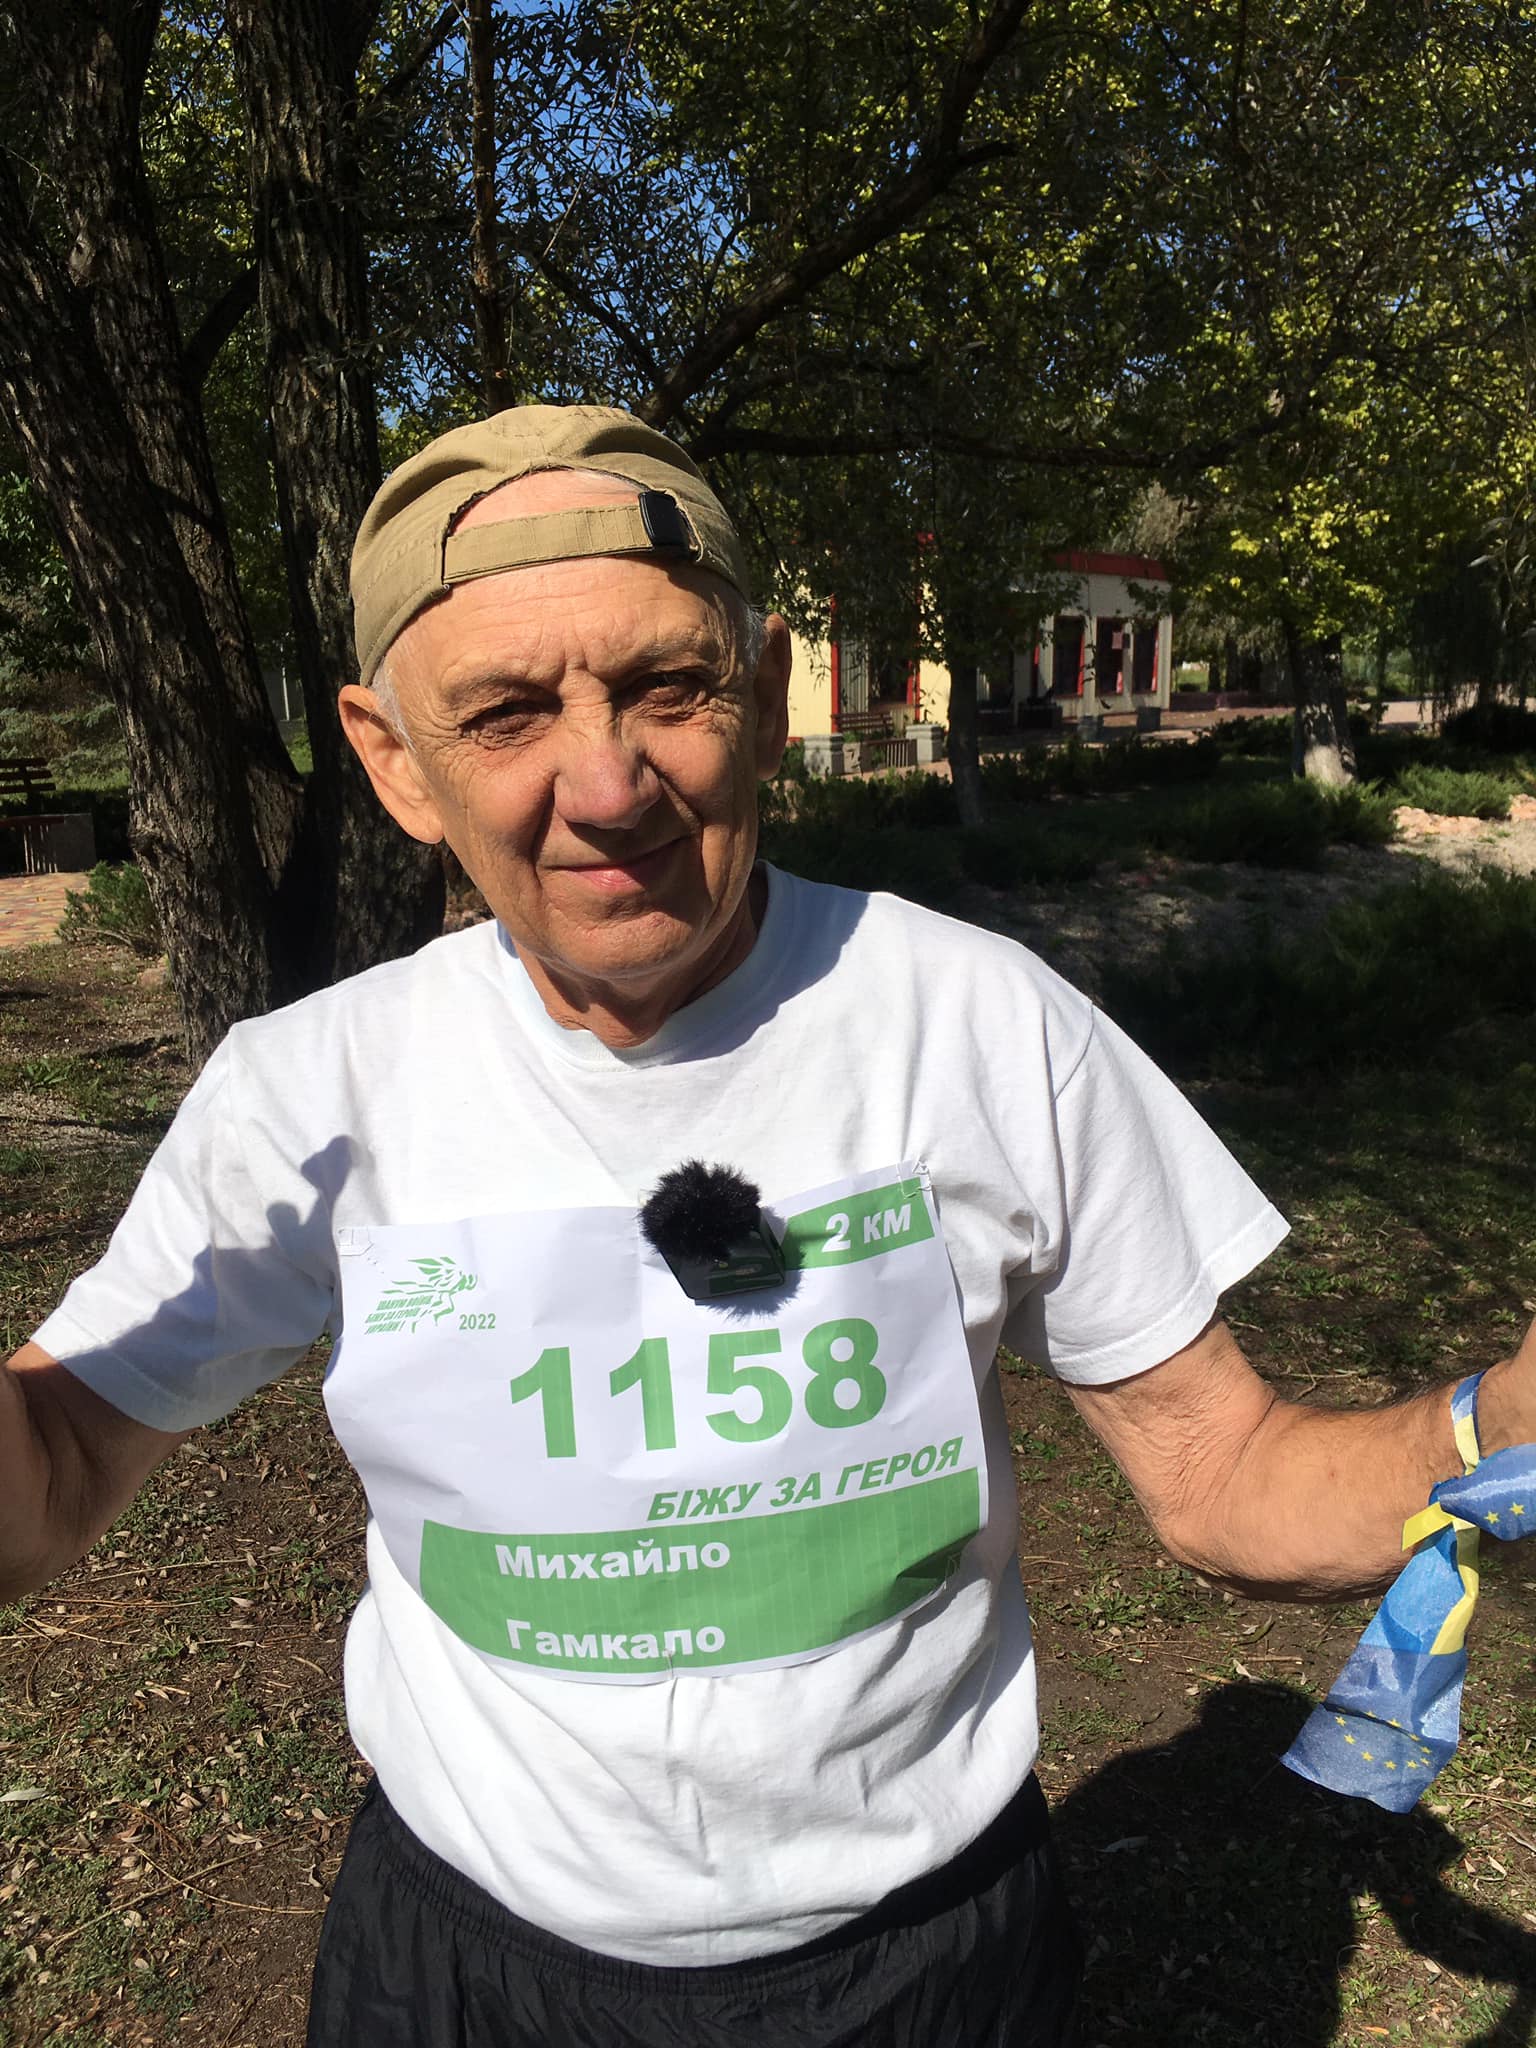 “Чту воинов, бегу за героя”: 70-летний преподаватель из Славянска пробежал 2 километра в память о погибшем коллеге 1